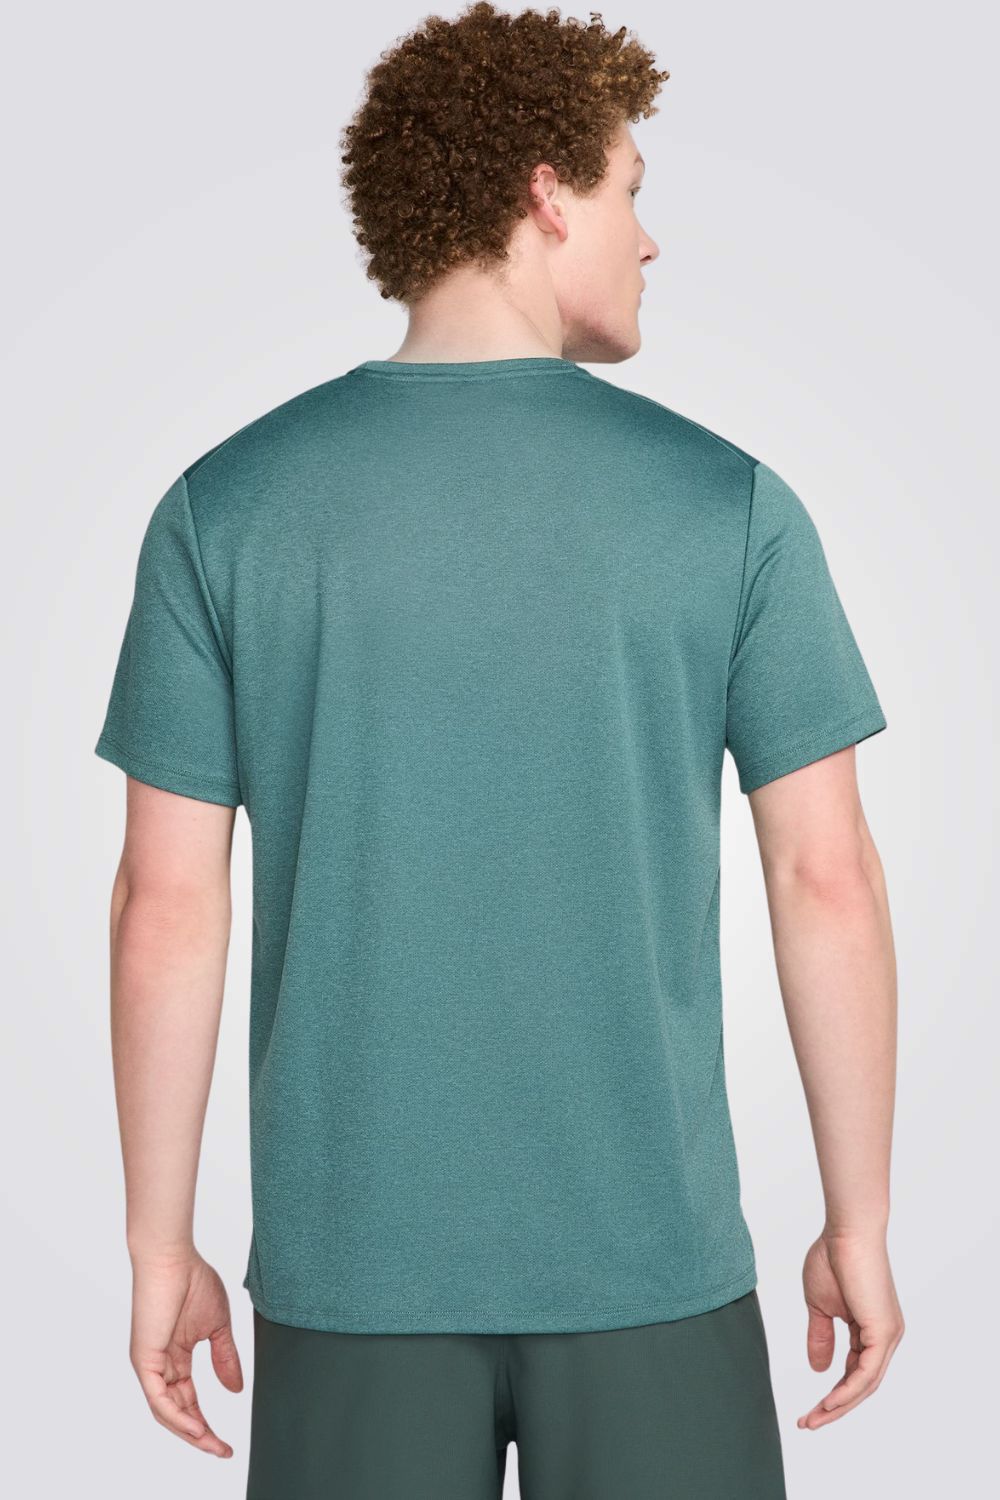 חולצה מבית המותג NIKE, עשויה מבד מנדף זיעה ששומר על הגוף שלך מאורר לאורך כל היום.